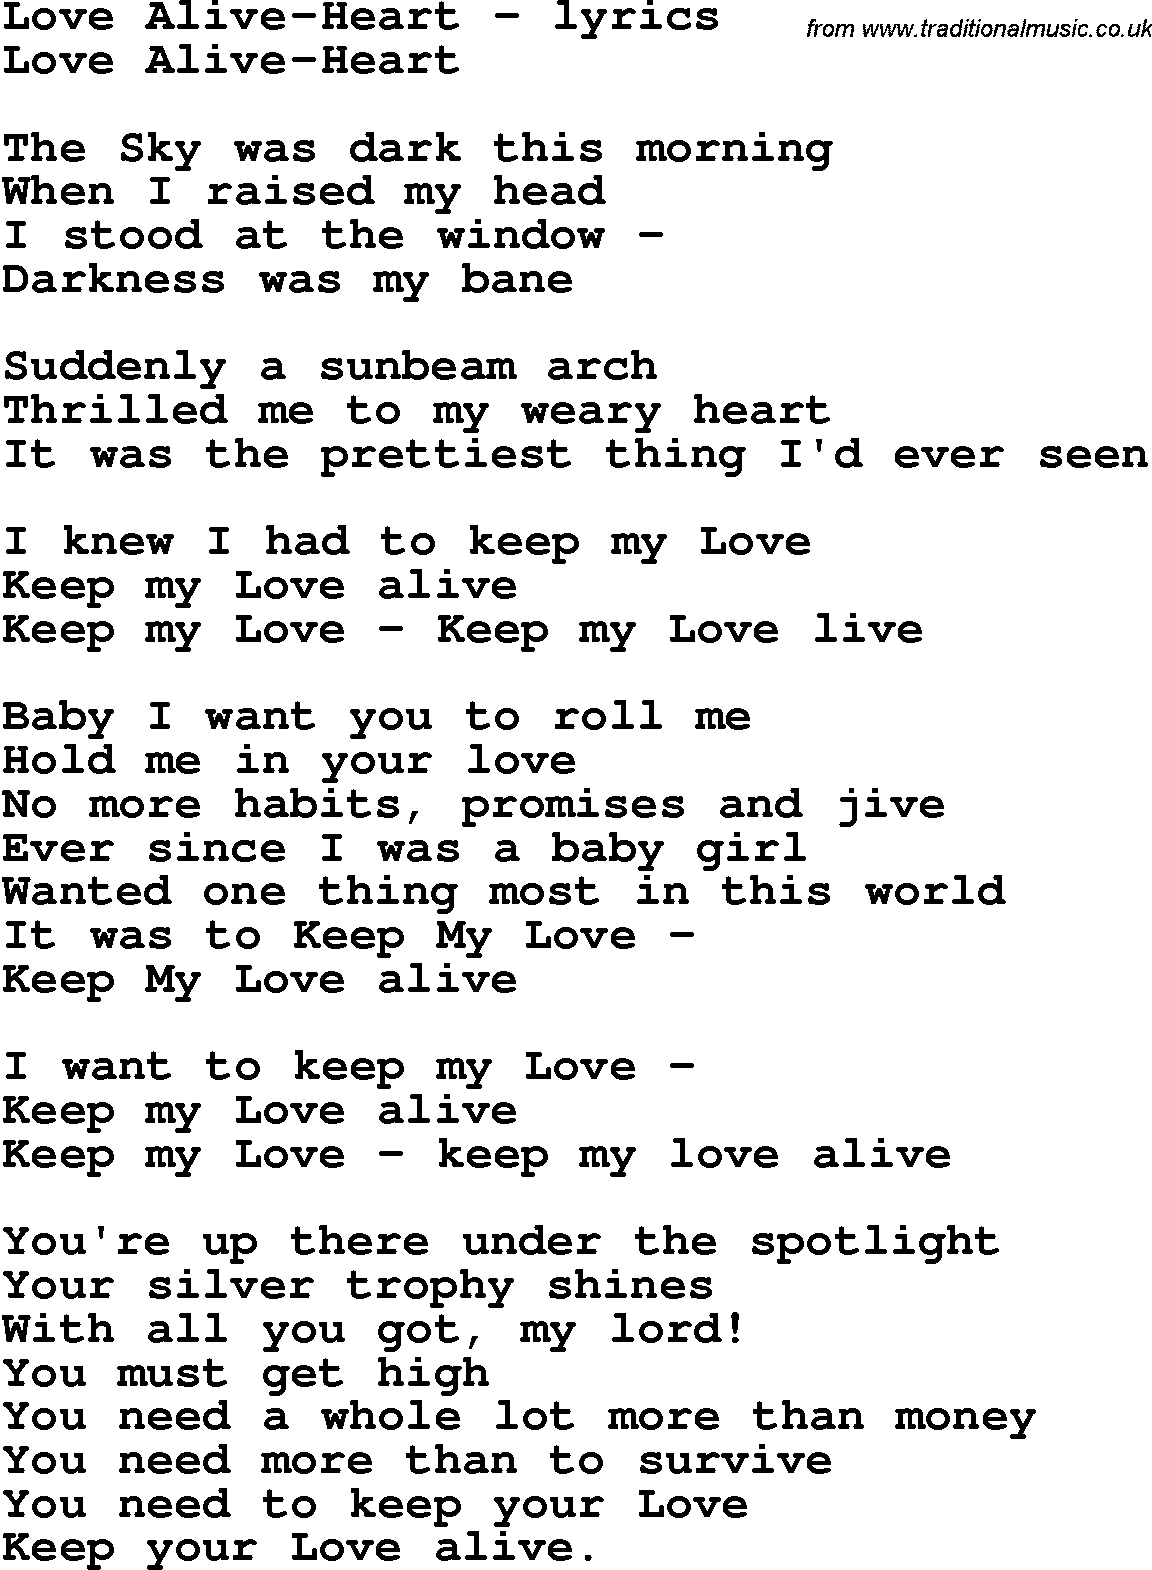 Love Song Lyrics for: Love Alive-Heart